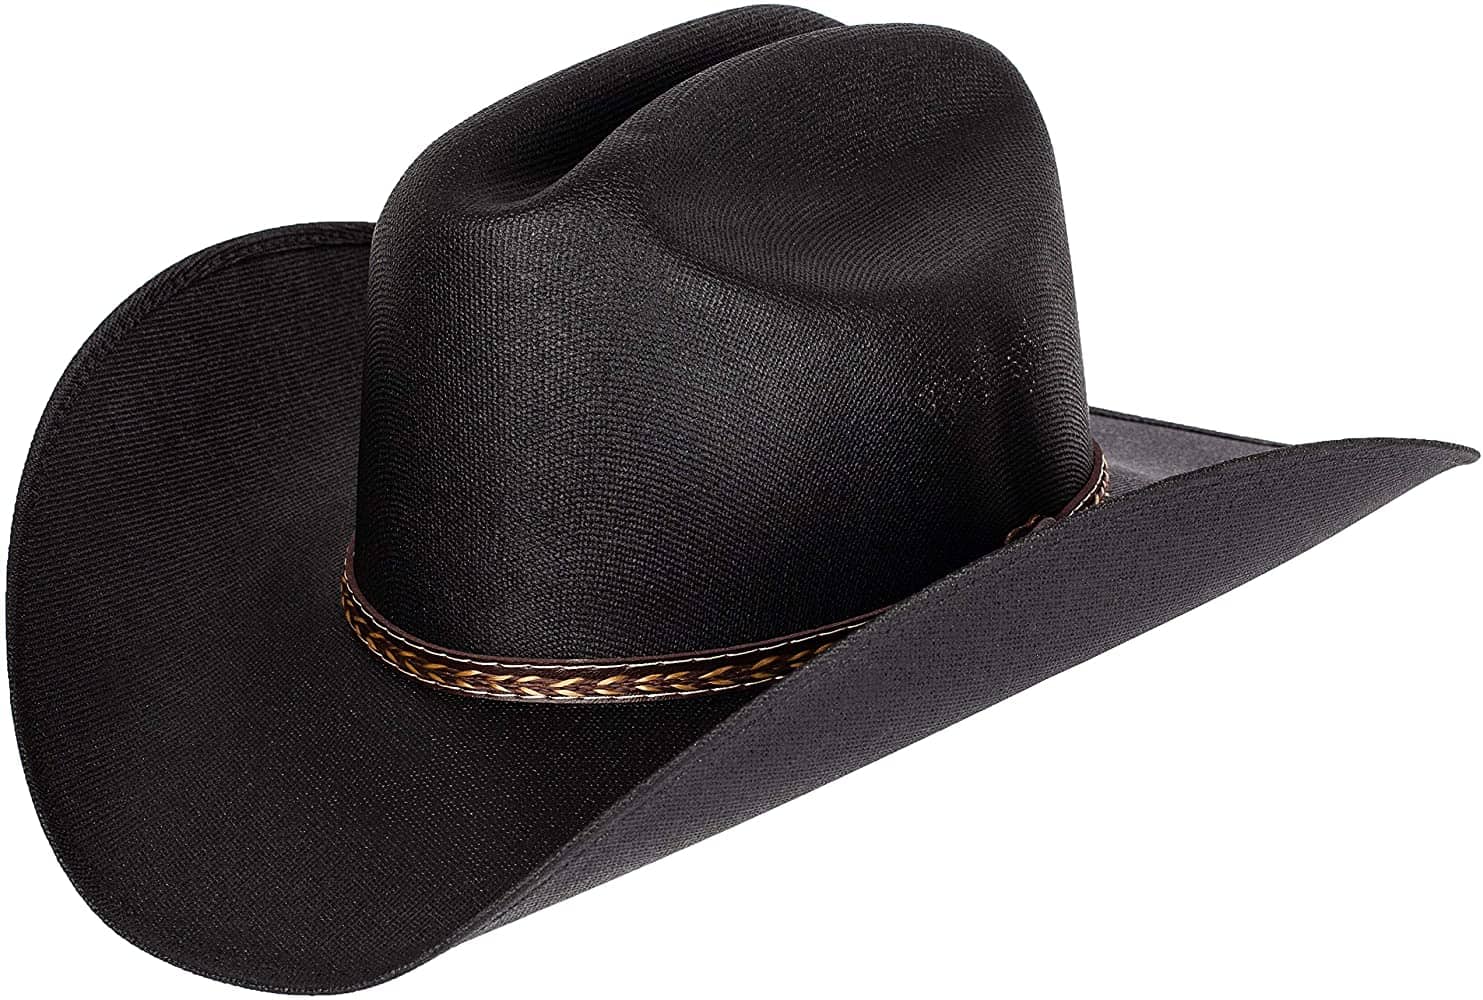 Queue Essentials cowboy hat